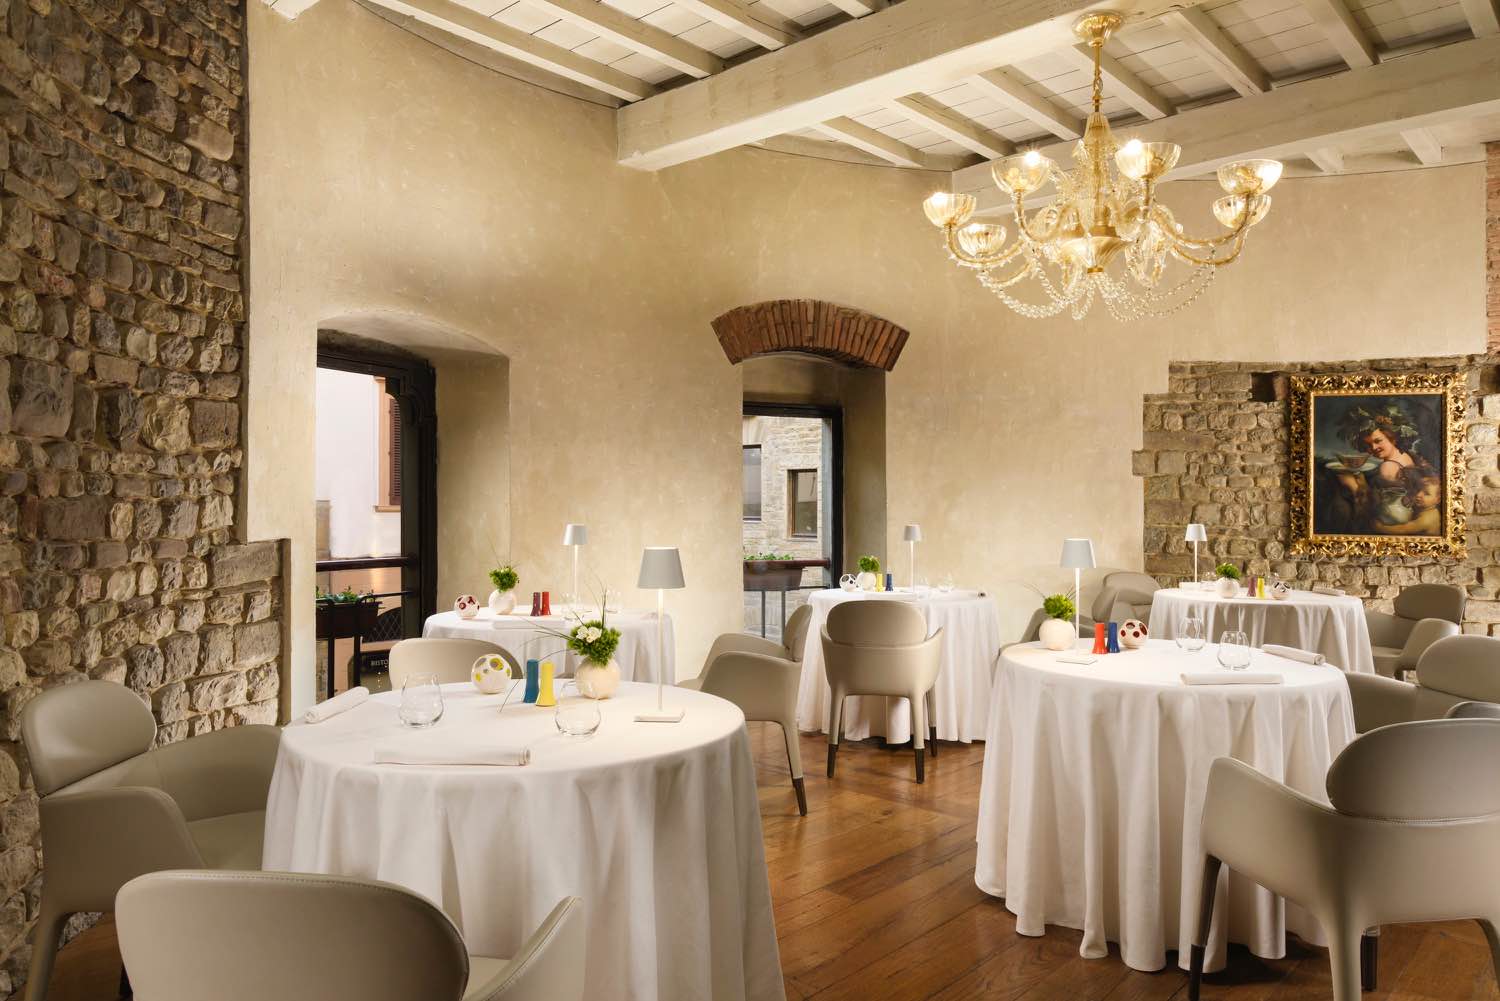 I 6 migliori ristoranti di design a Firenze,dove arredi, architettura e senso estetico incotrano la migliore cucina toscana reinterpretata in chiave moderna: ristorante Santa Elisabetta